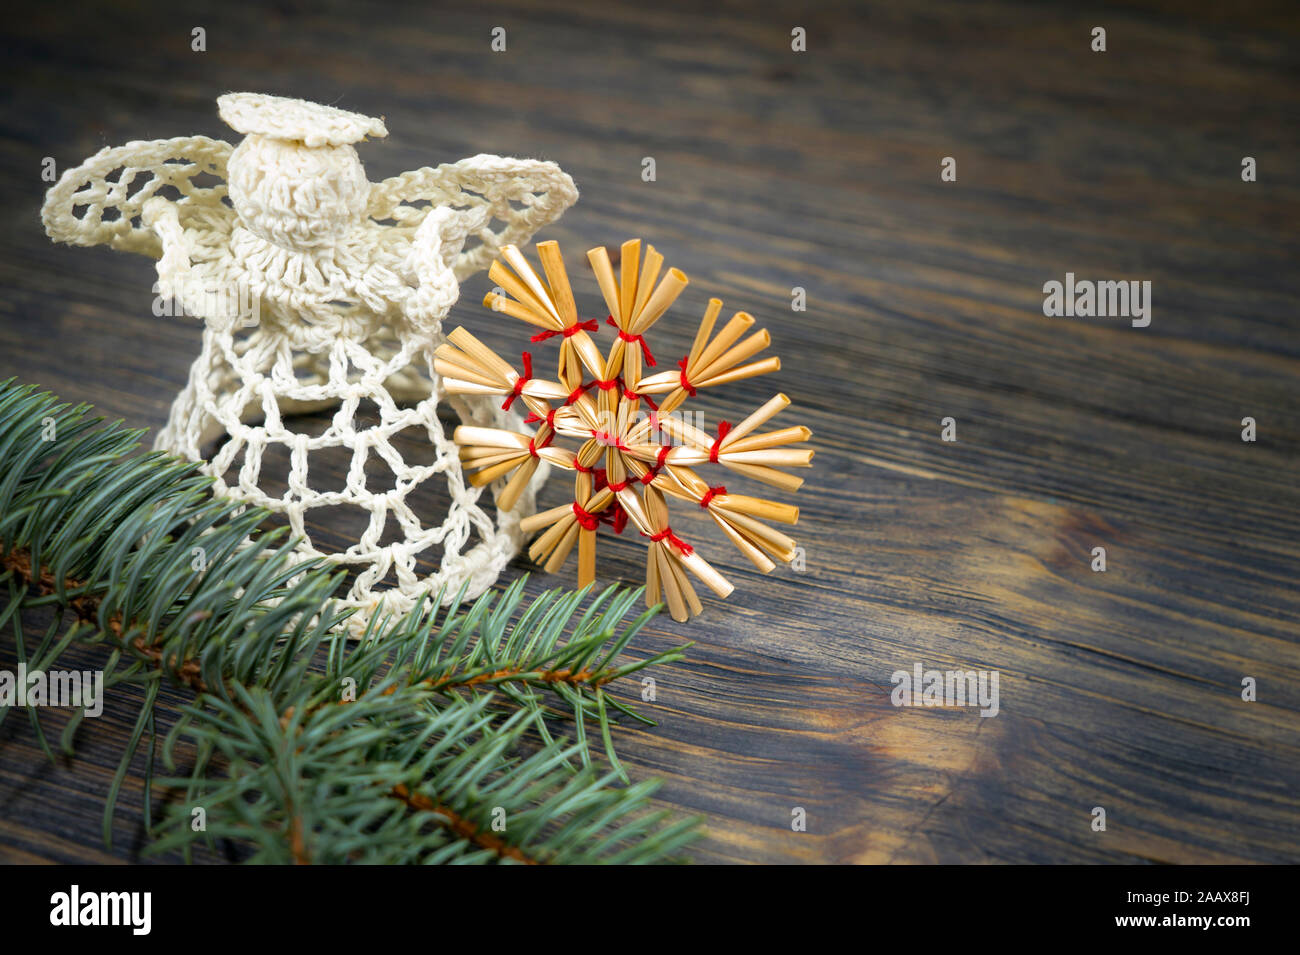 Fond de Noël avec des ornements faits à la main, y compris un ange de bonneterie thread et une paille star attaché avec de la ficelle rouge sur un bois rustique background Banque D'Images